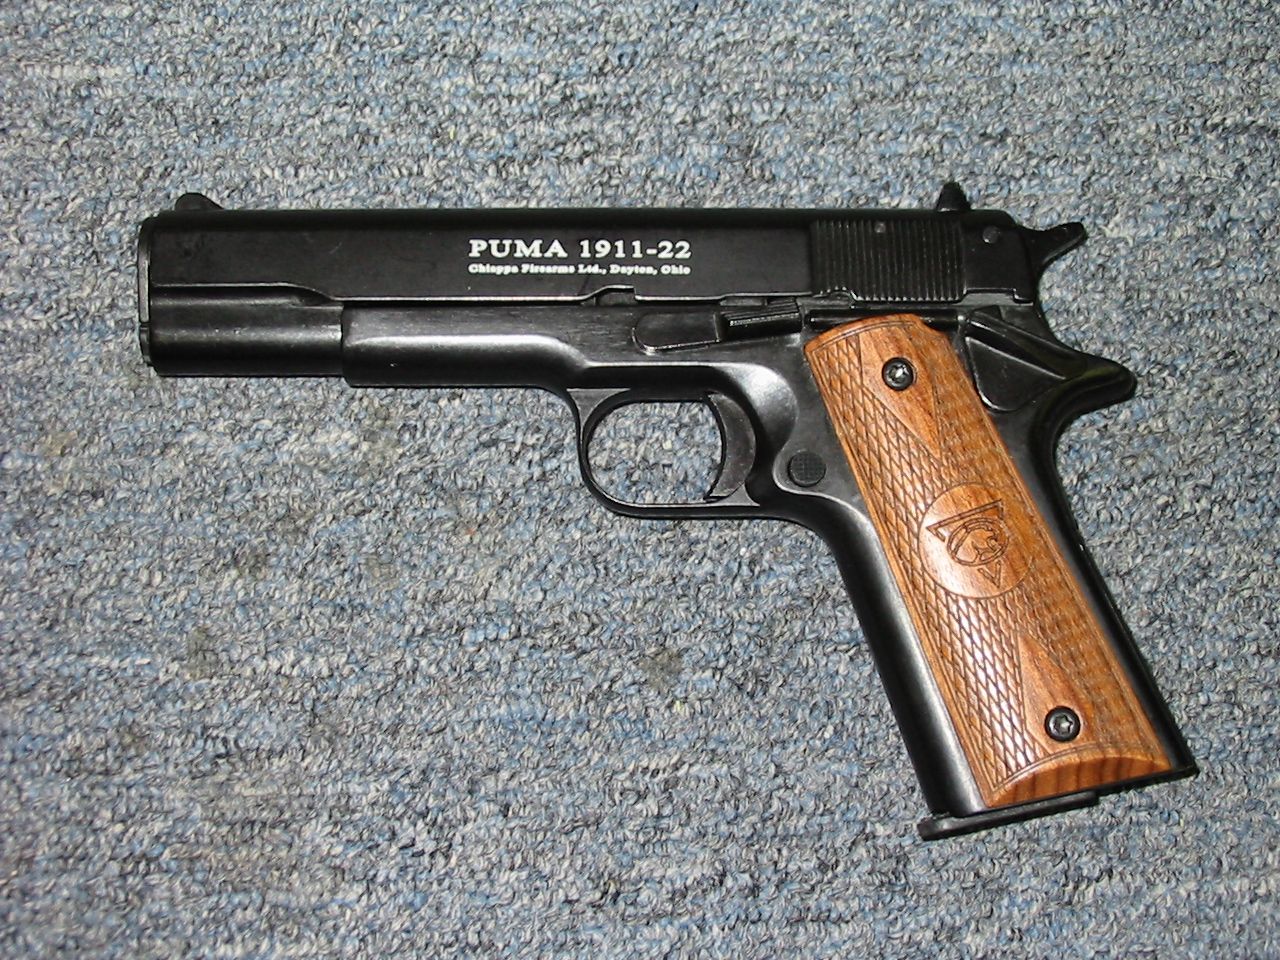 1911 firearms